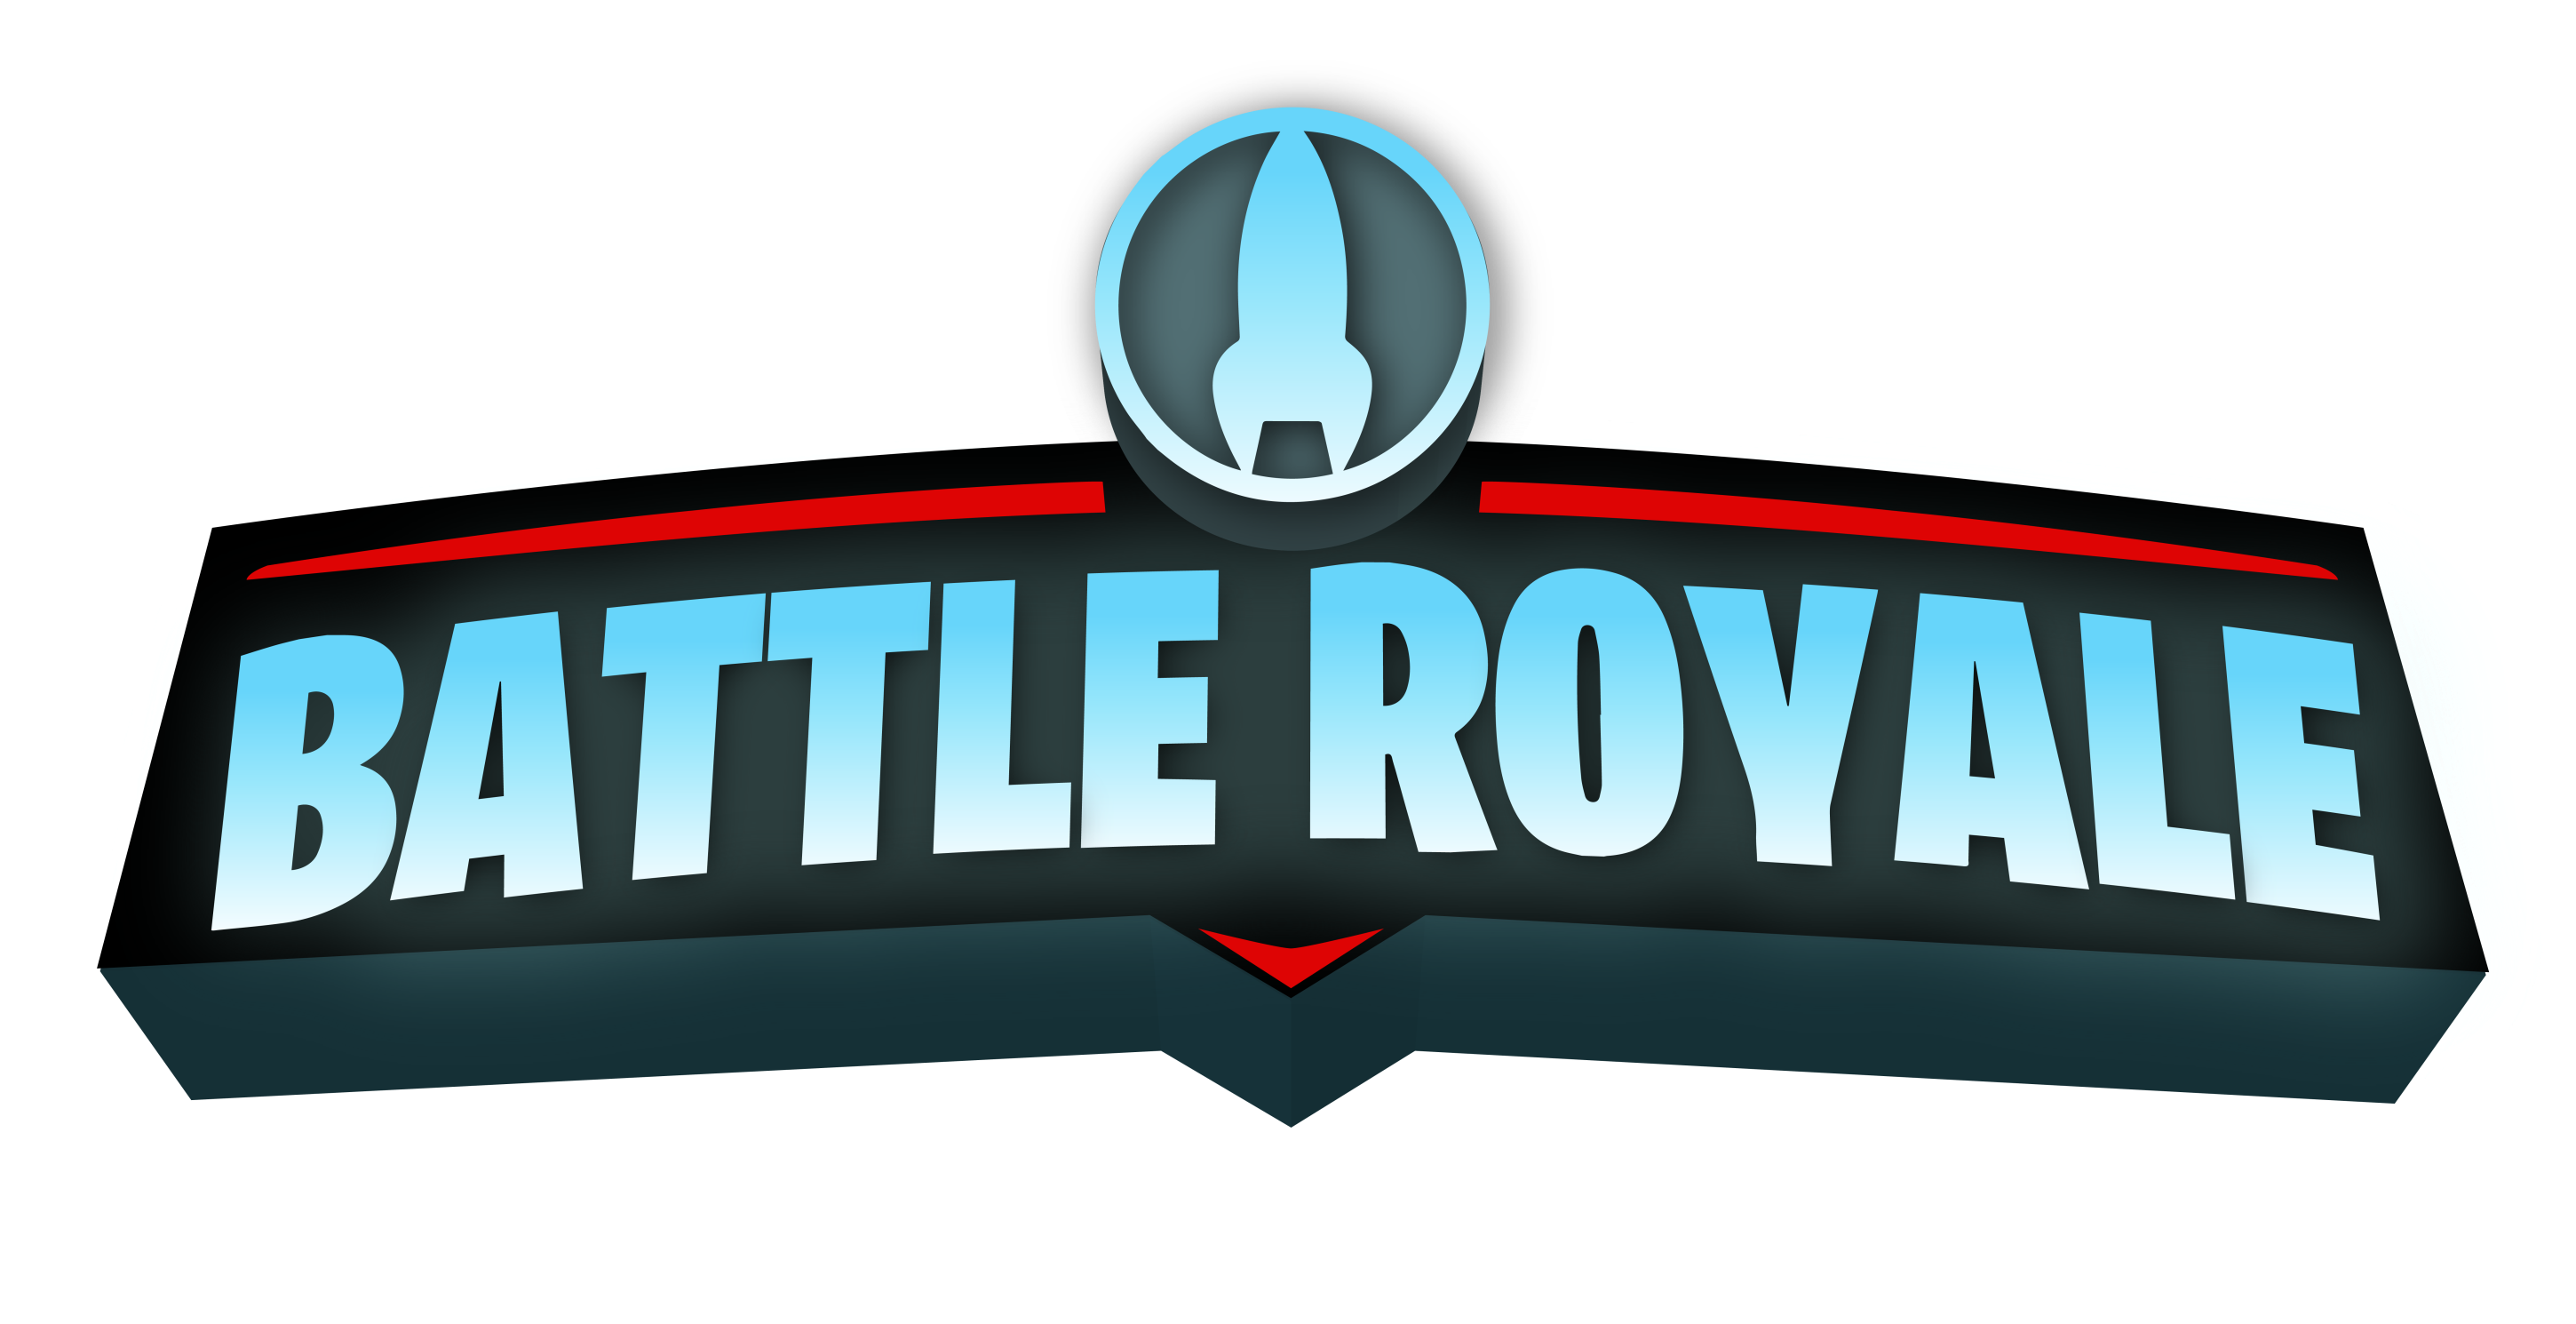 rocket royale logo